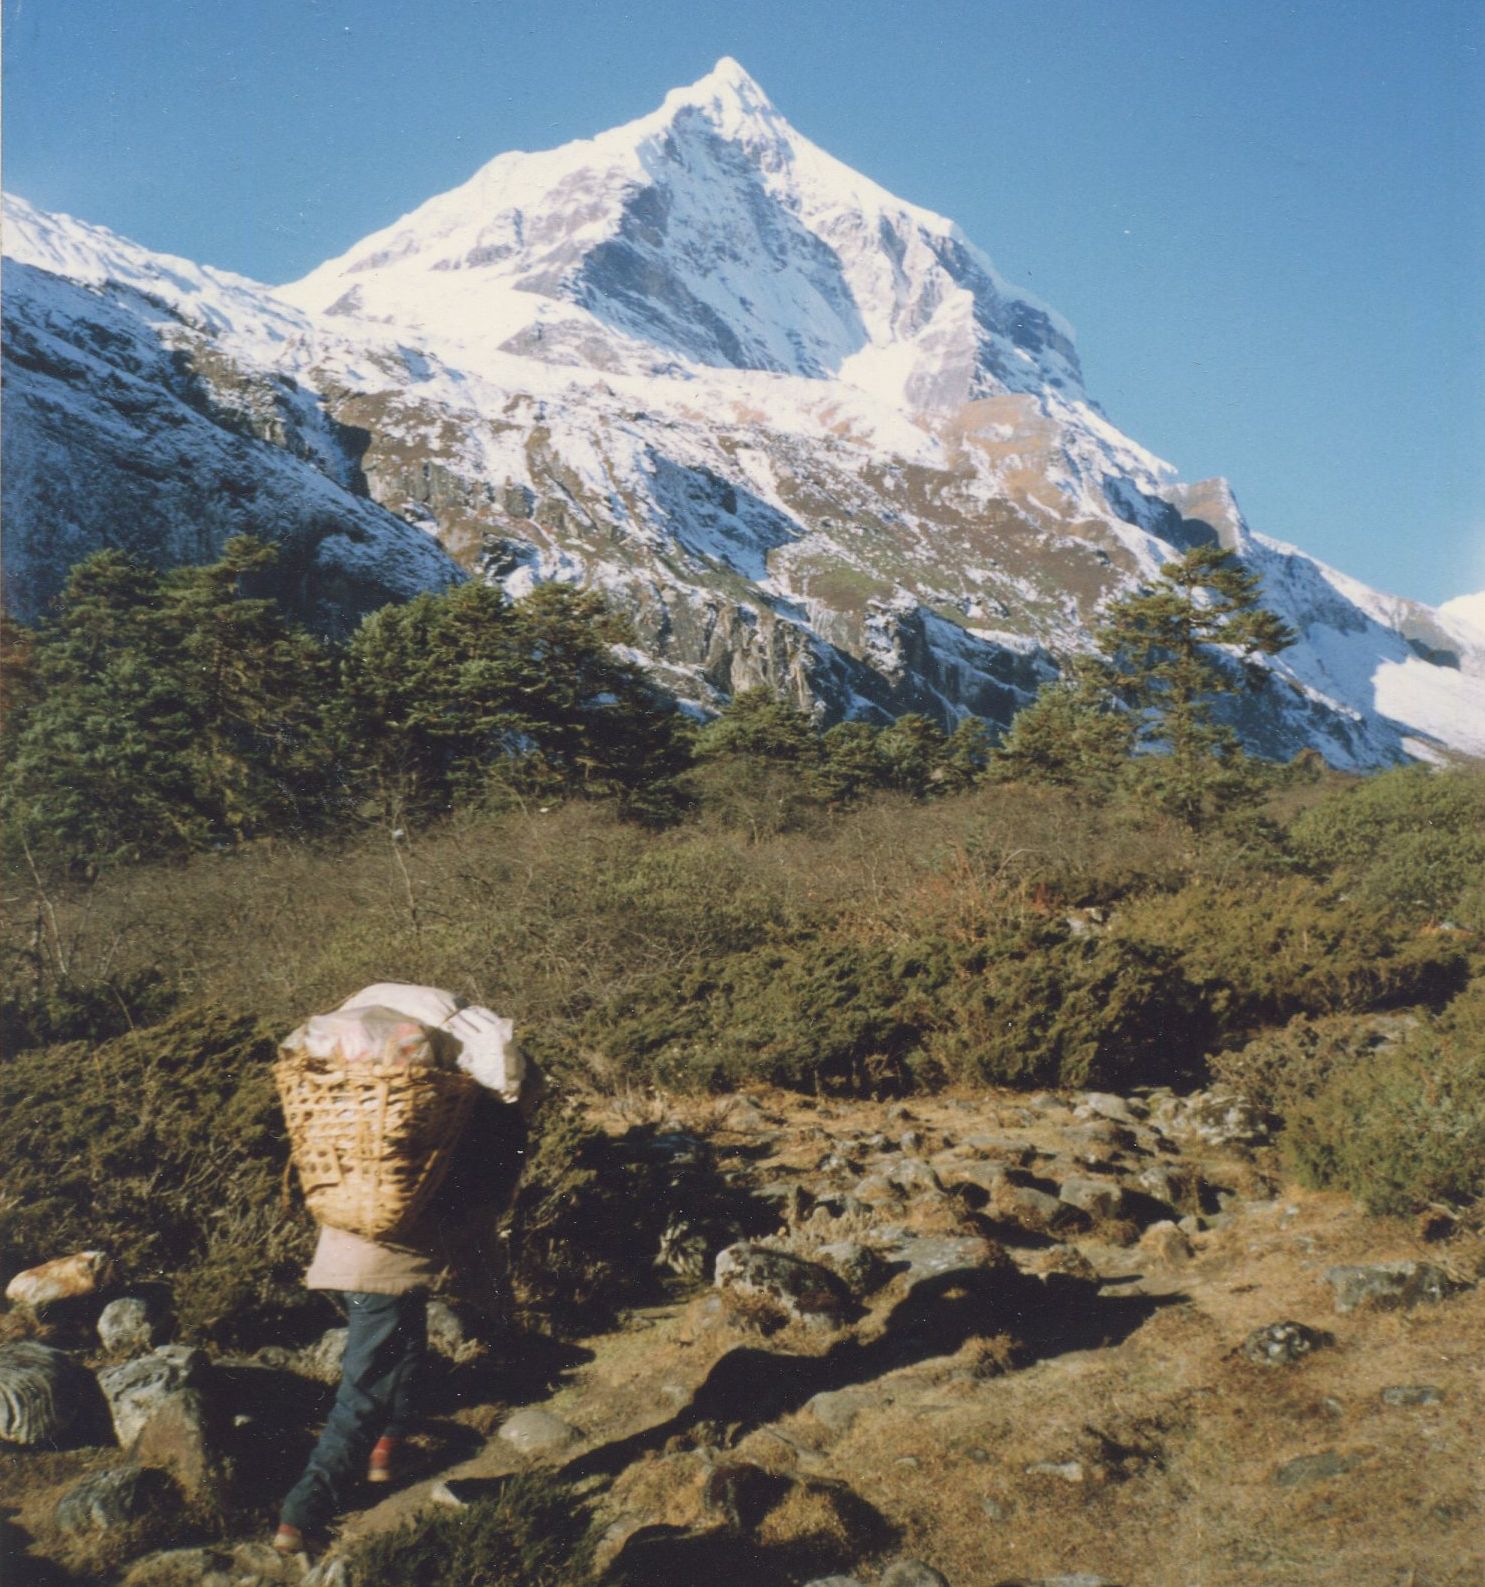 Peak 7 ( 6105 metres ) in the Barun Valley